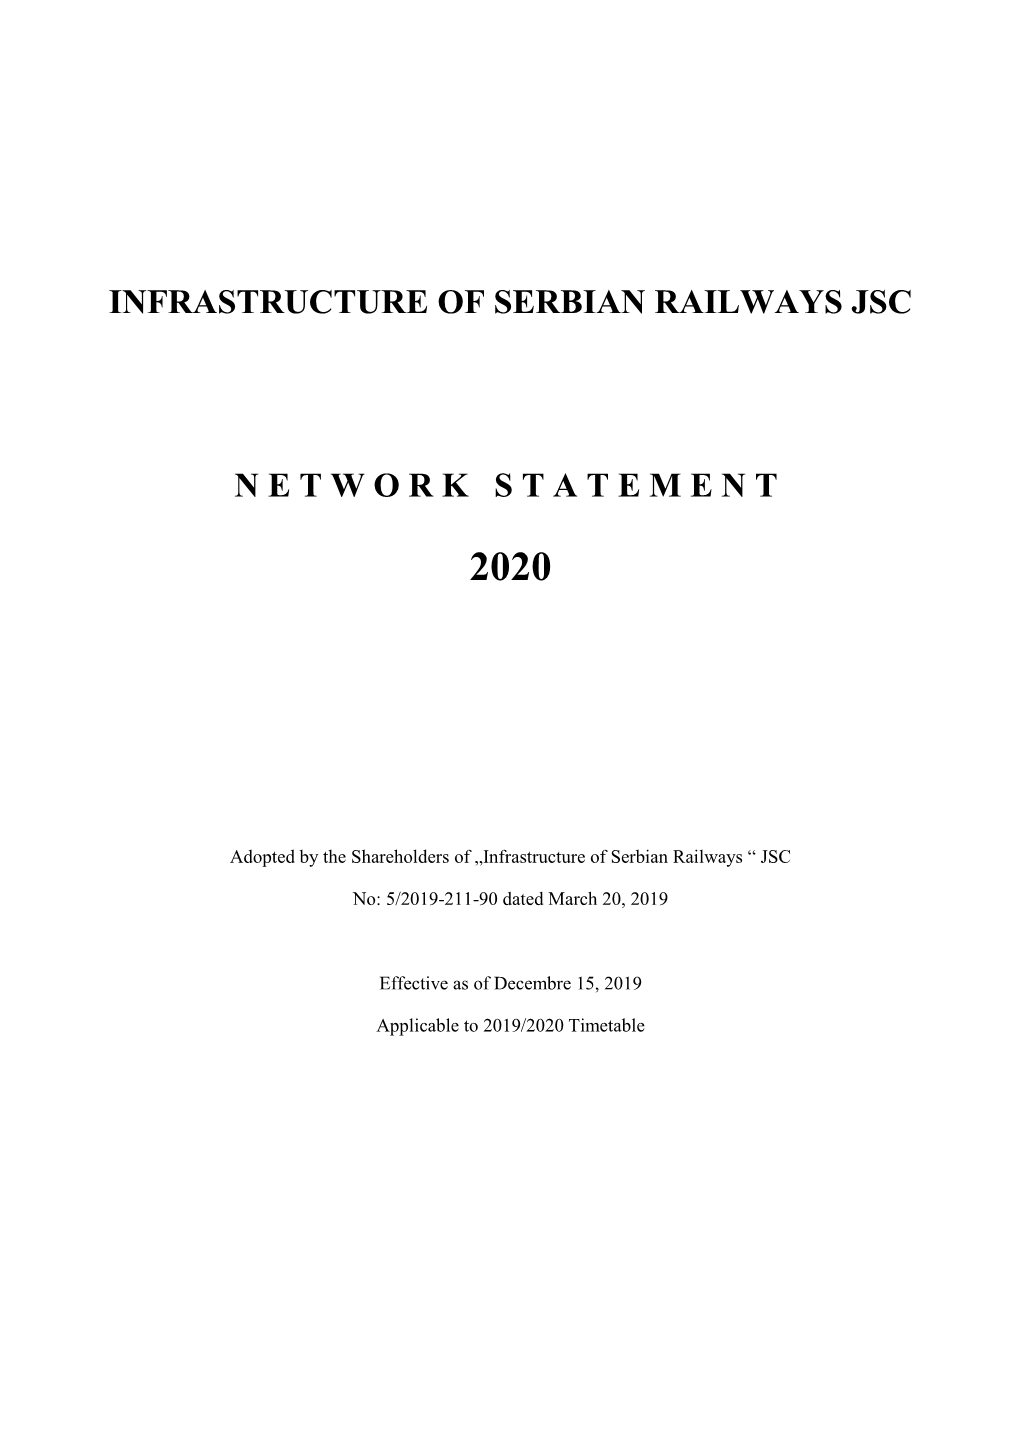 Infrastructure of Serbian Railways Jsc Network Statement 2020